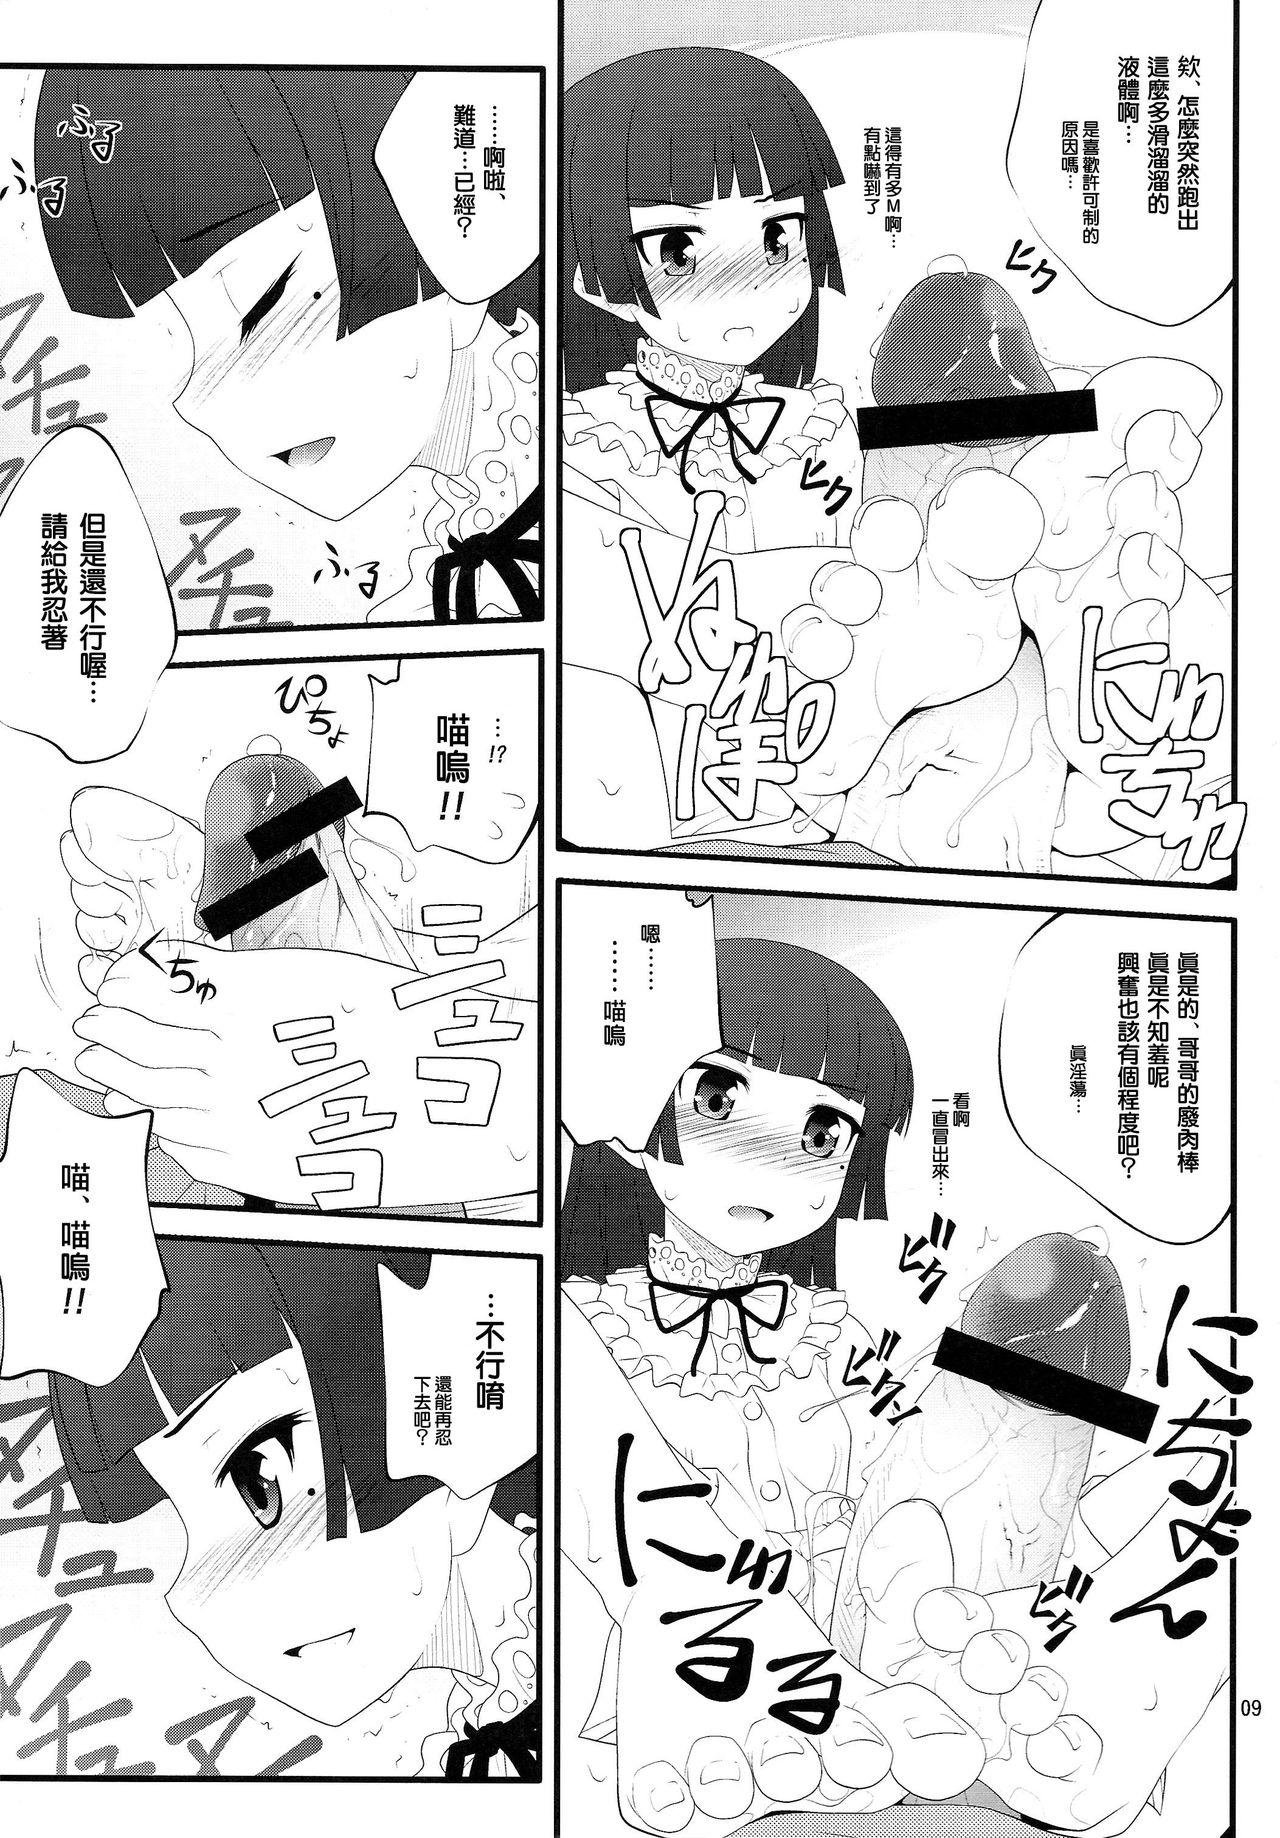 Delicia Nii-san, Ashi Monde Choudai After - Ore no imouto ga konna ni kawaii wake ga nai Chat - Page 9